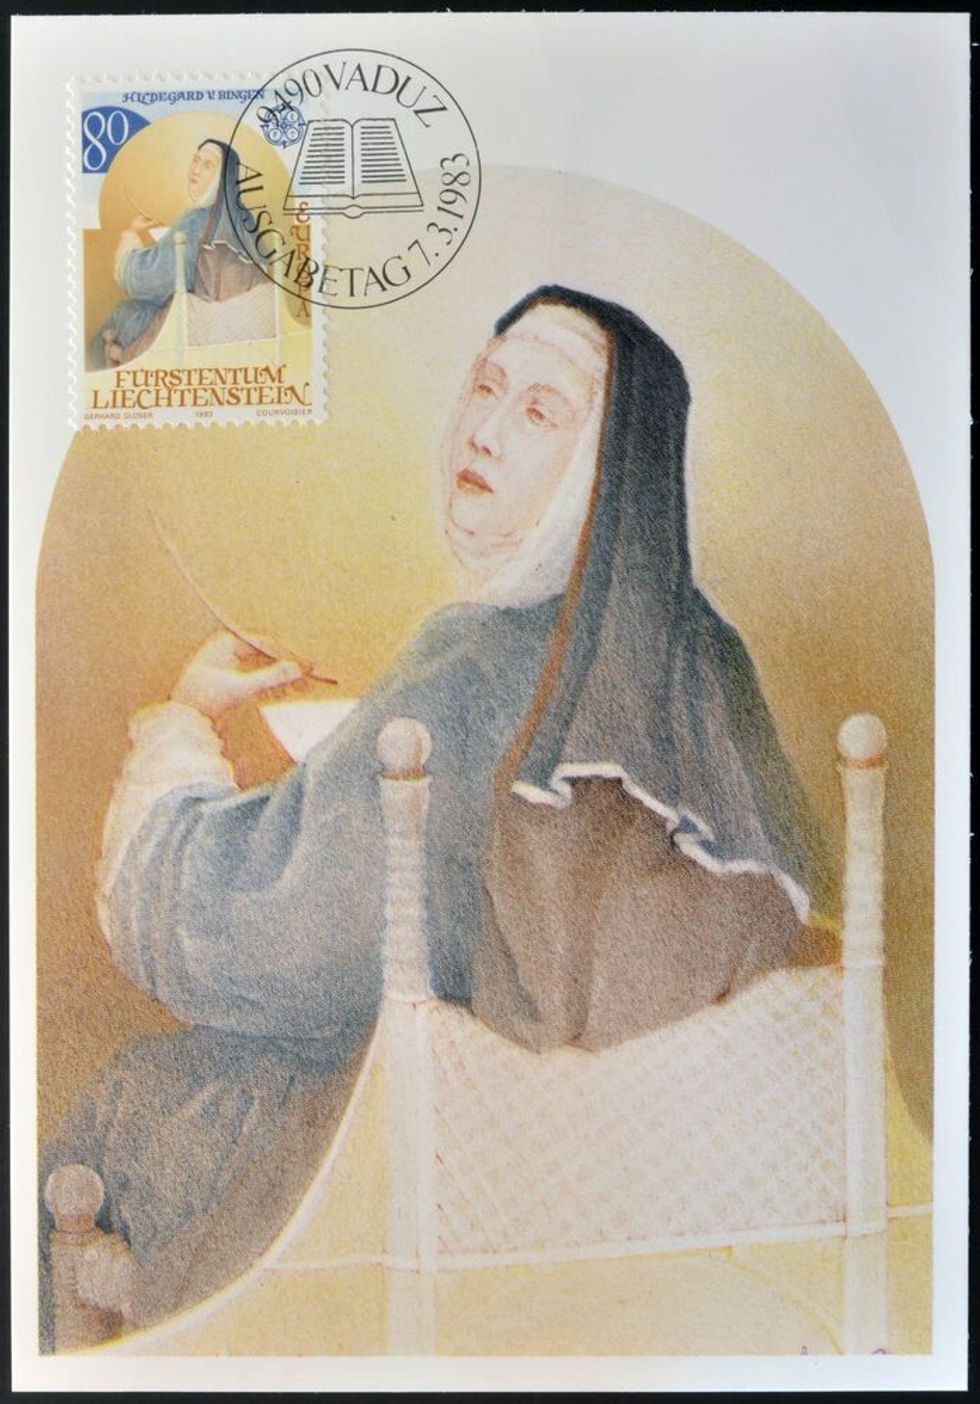  A stamp printed in Liechtenstein shows Hildegard of Bingen, circa 1983